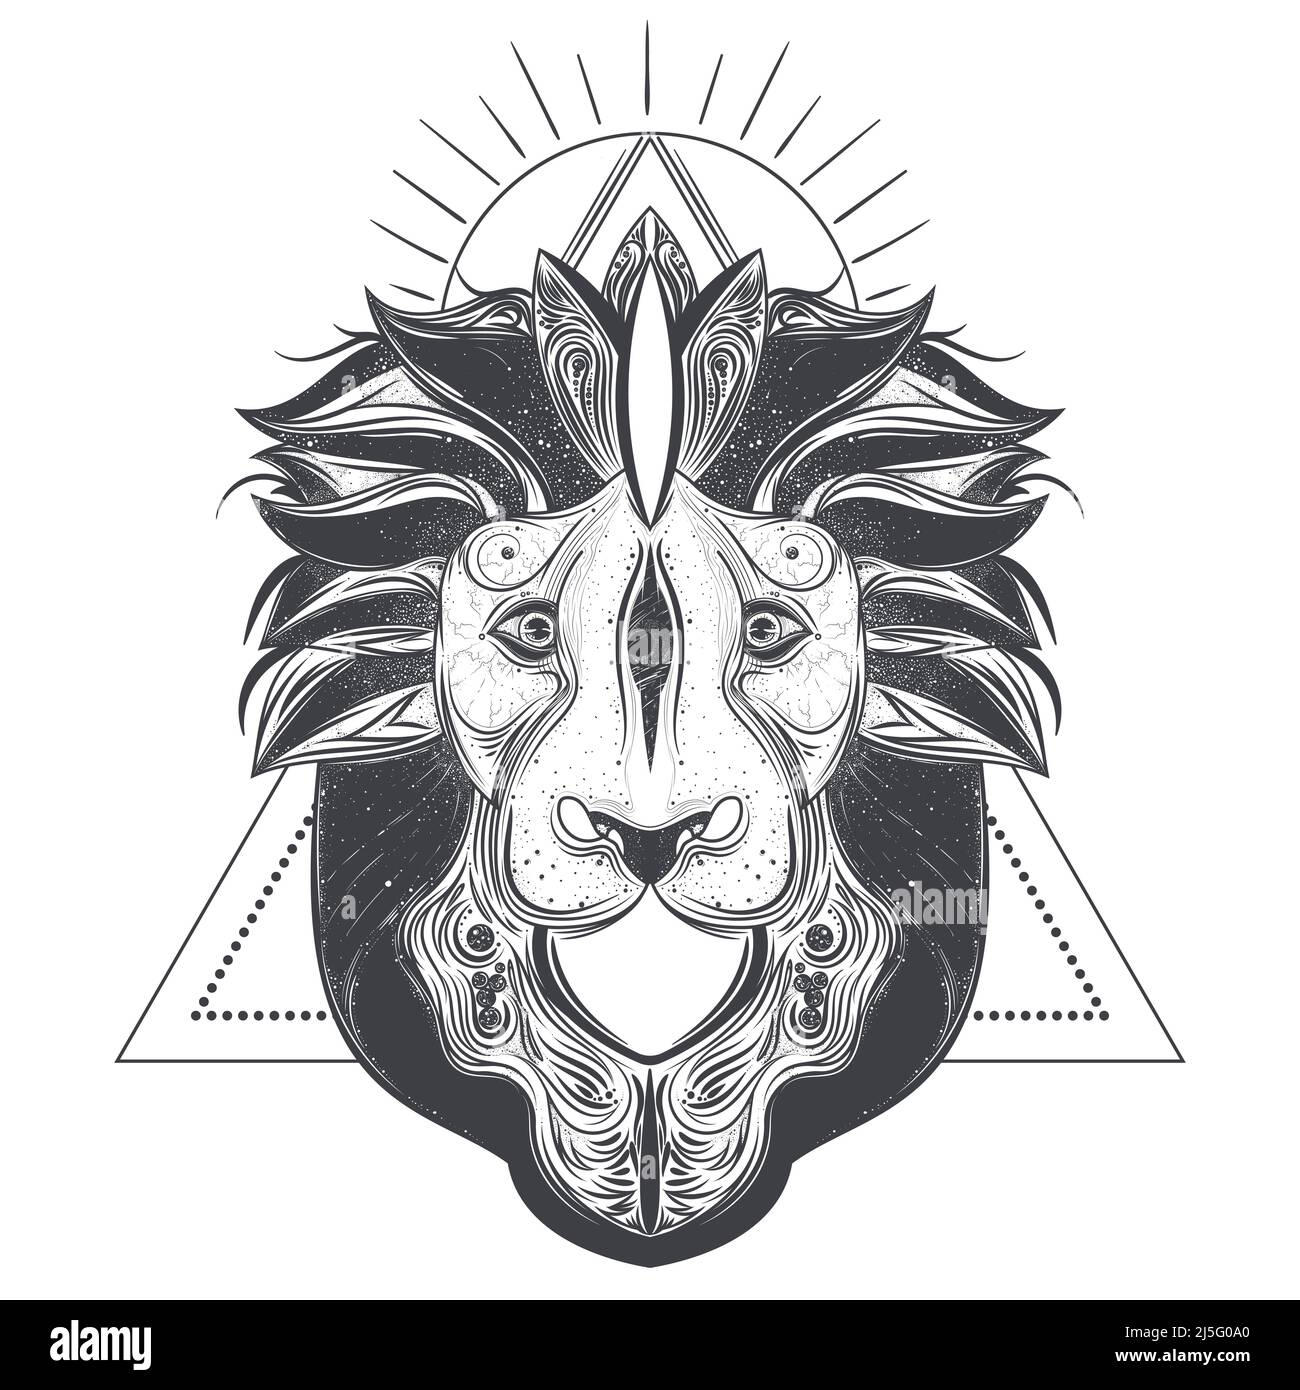 Illustration vectorielle de la ligne de tête du lion isolée sur fond blanc. Animal totem avec ornements géométriques abstraits Illustration de Vecteur